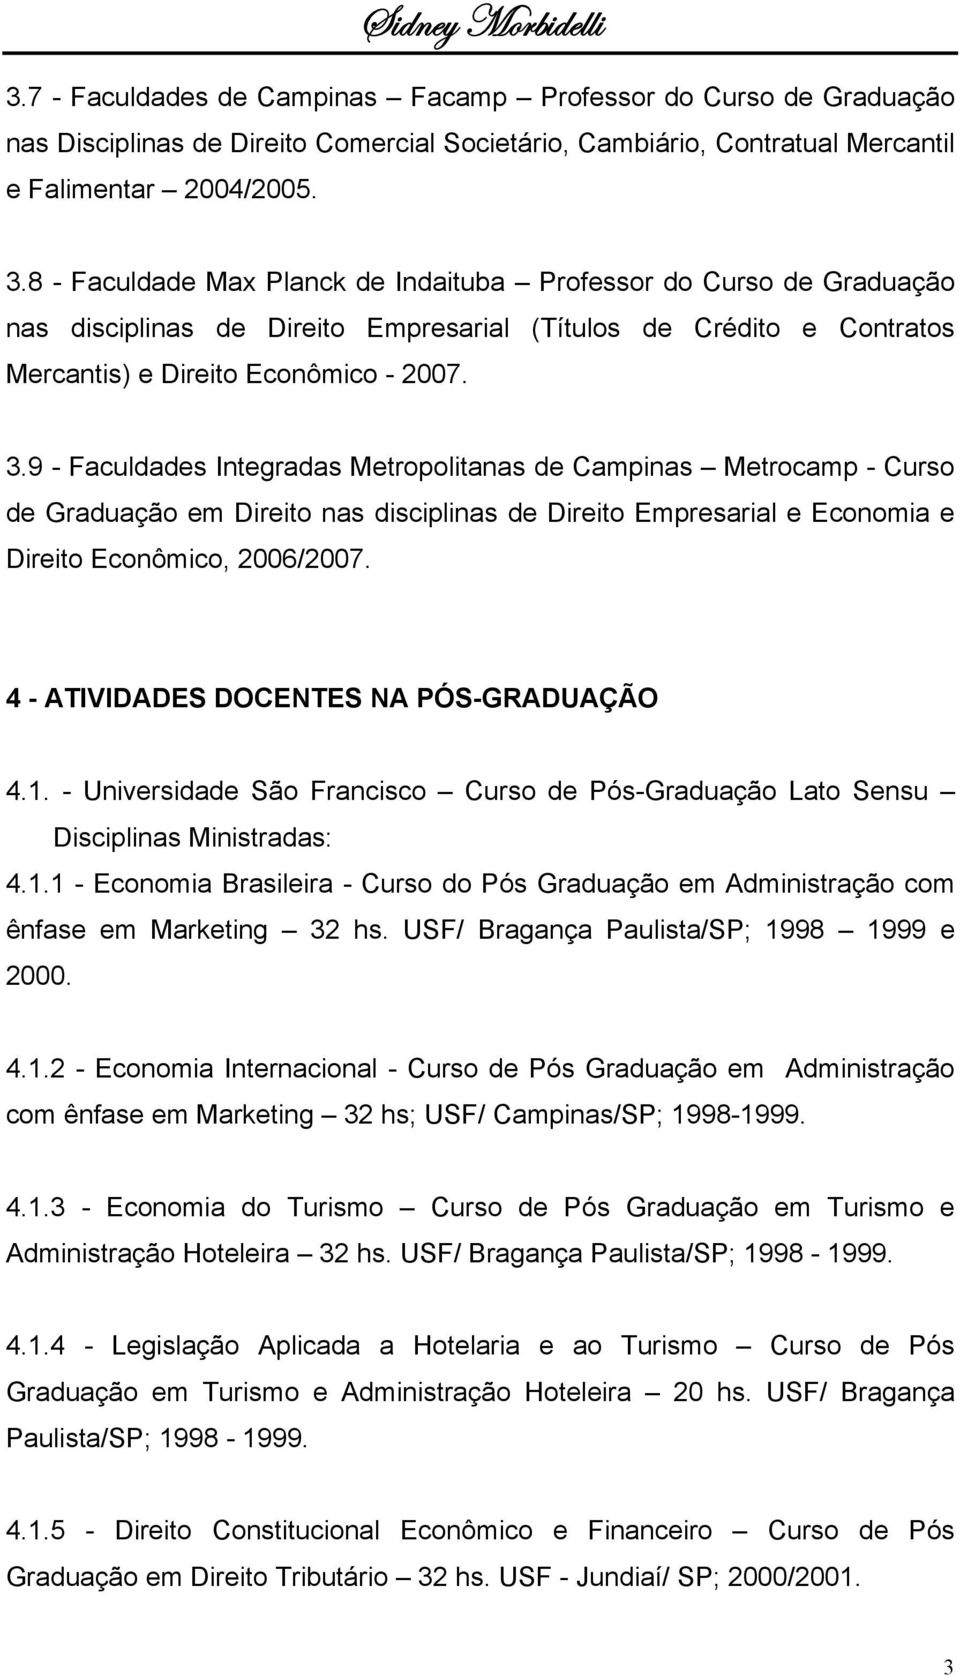 9 - Faculdades Integradas Metropolitanas de Campinas Metrocamp - Curso de Graduação em Direito nas disciplinas de Direito Empresarial e Economia e Direito Econômico, 2006/2007.